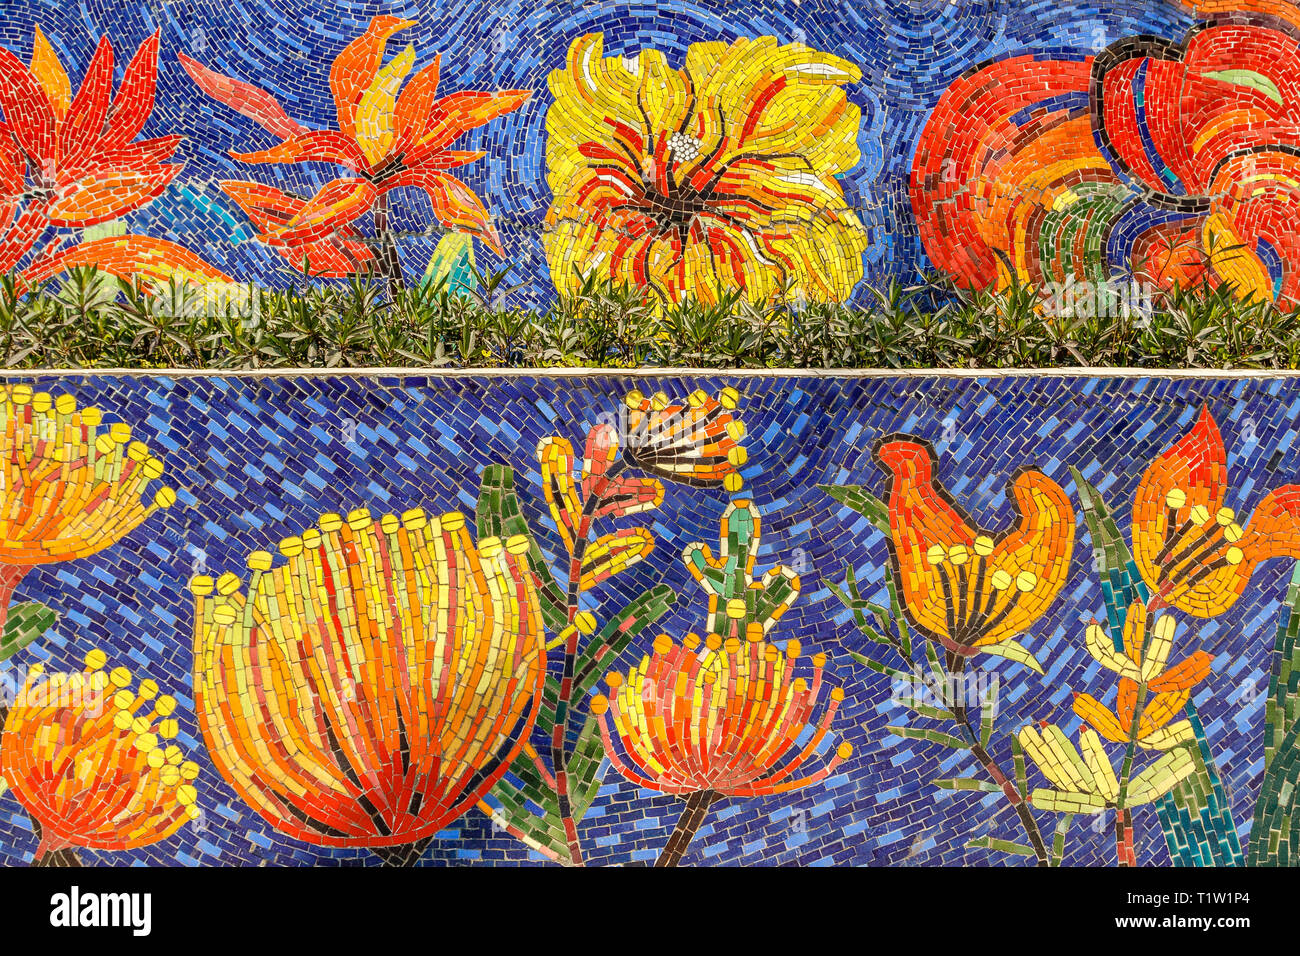 Hanoi Keramik Mosaik Wandbild oder Hanoi Keramik Straße. Vietnam. Darstellung von bunten Blumen. Die längste Keramische Wand in der Welt, Guinness Rekord. Stockfoto